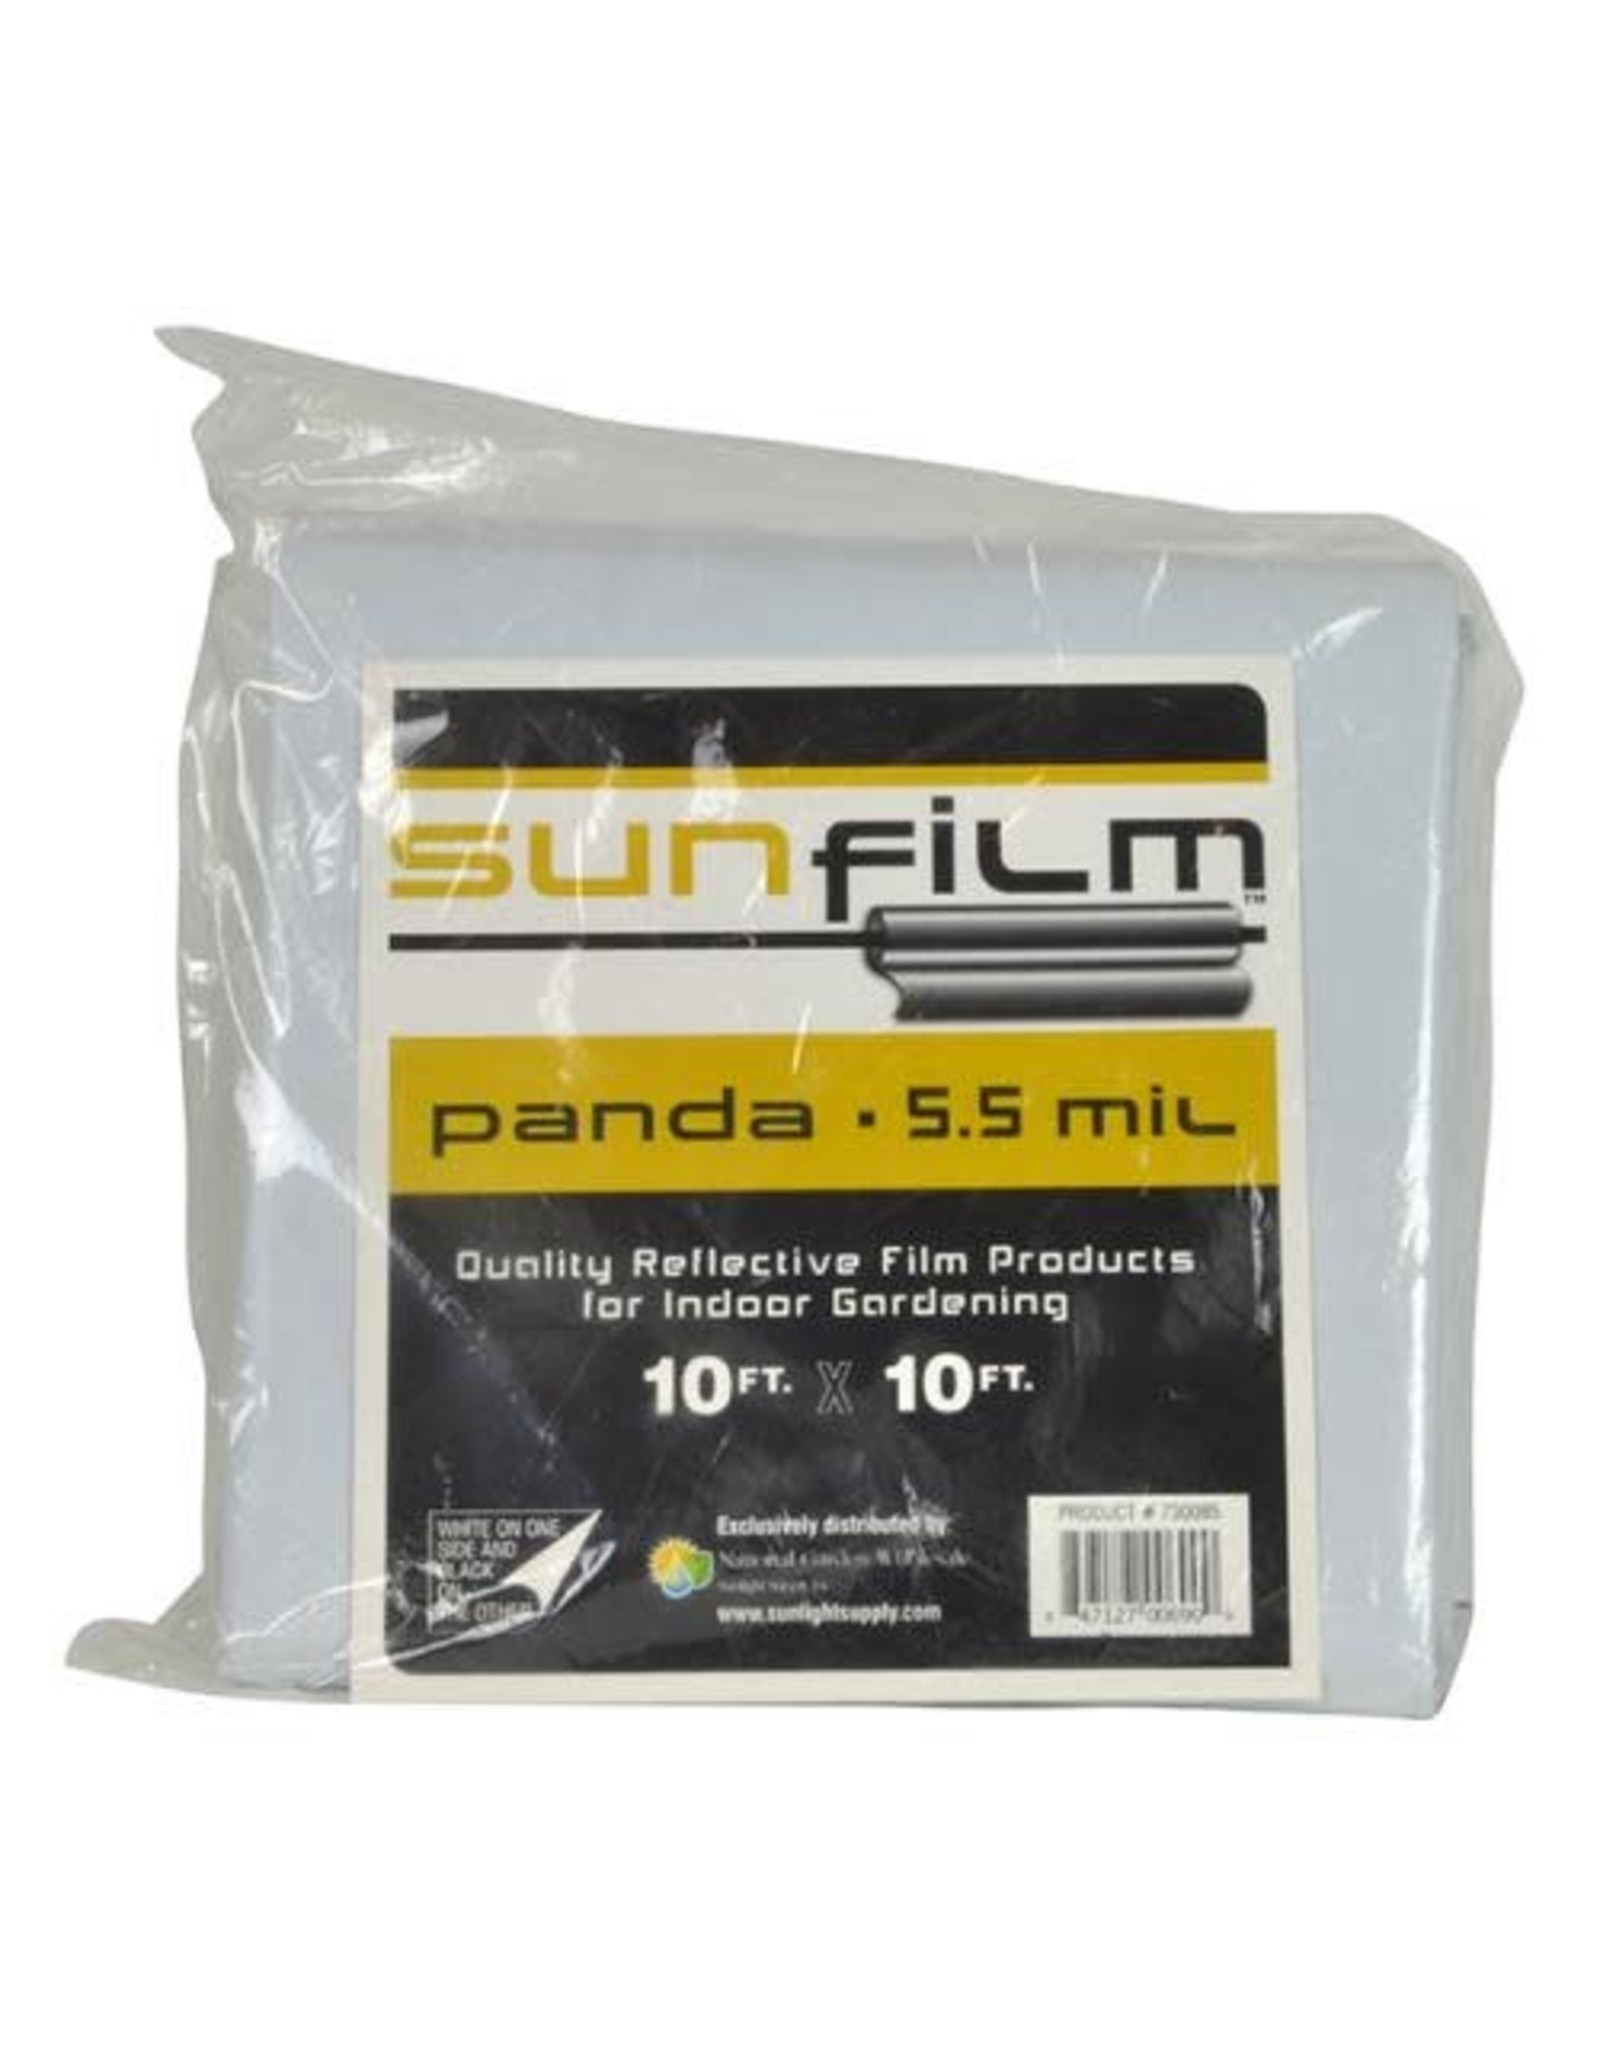 Sunfilm Sunfilm Black & White Panda Film 10 ft x 10 ft Folded & Bagged